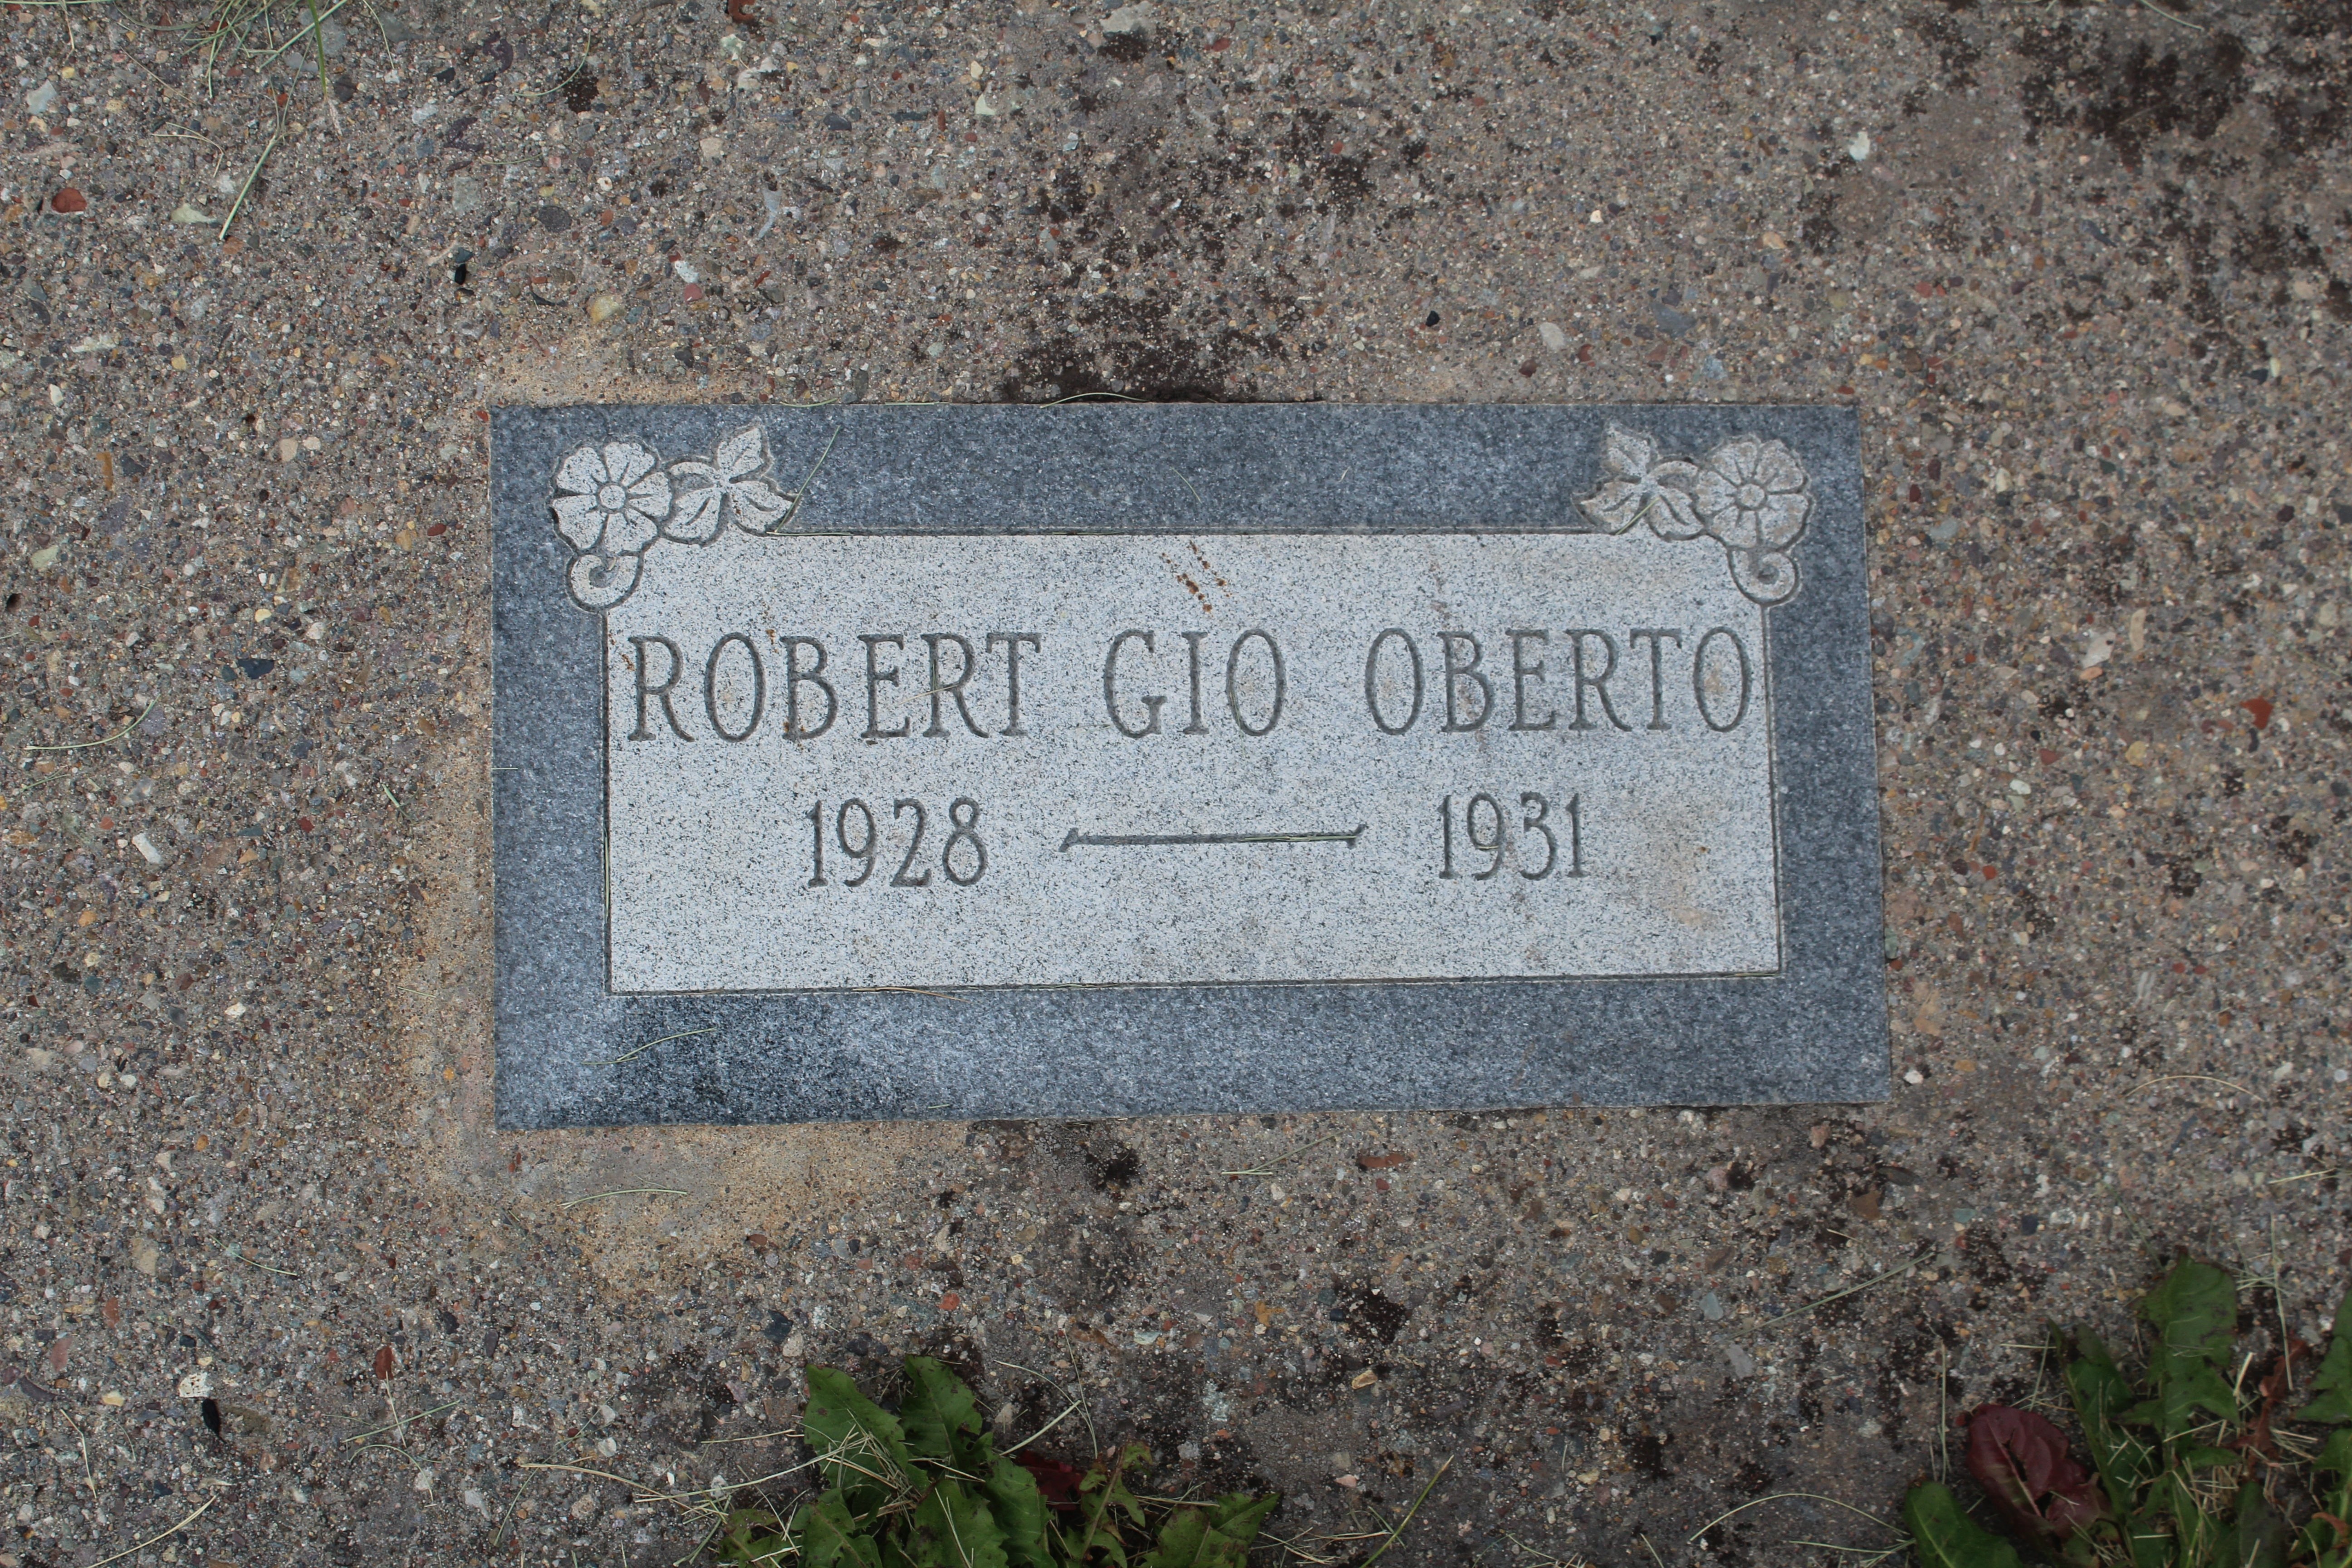 Robert Gio Oberto